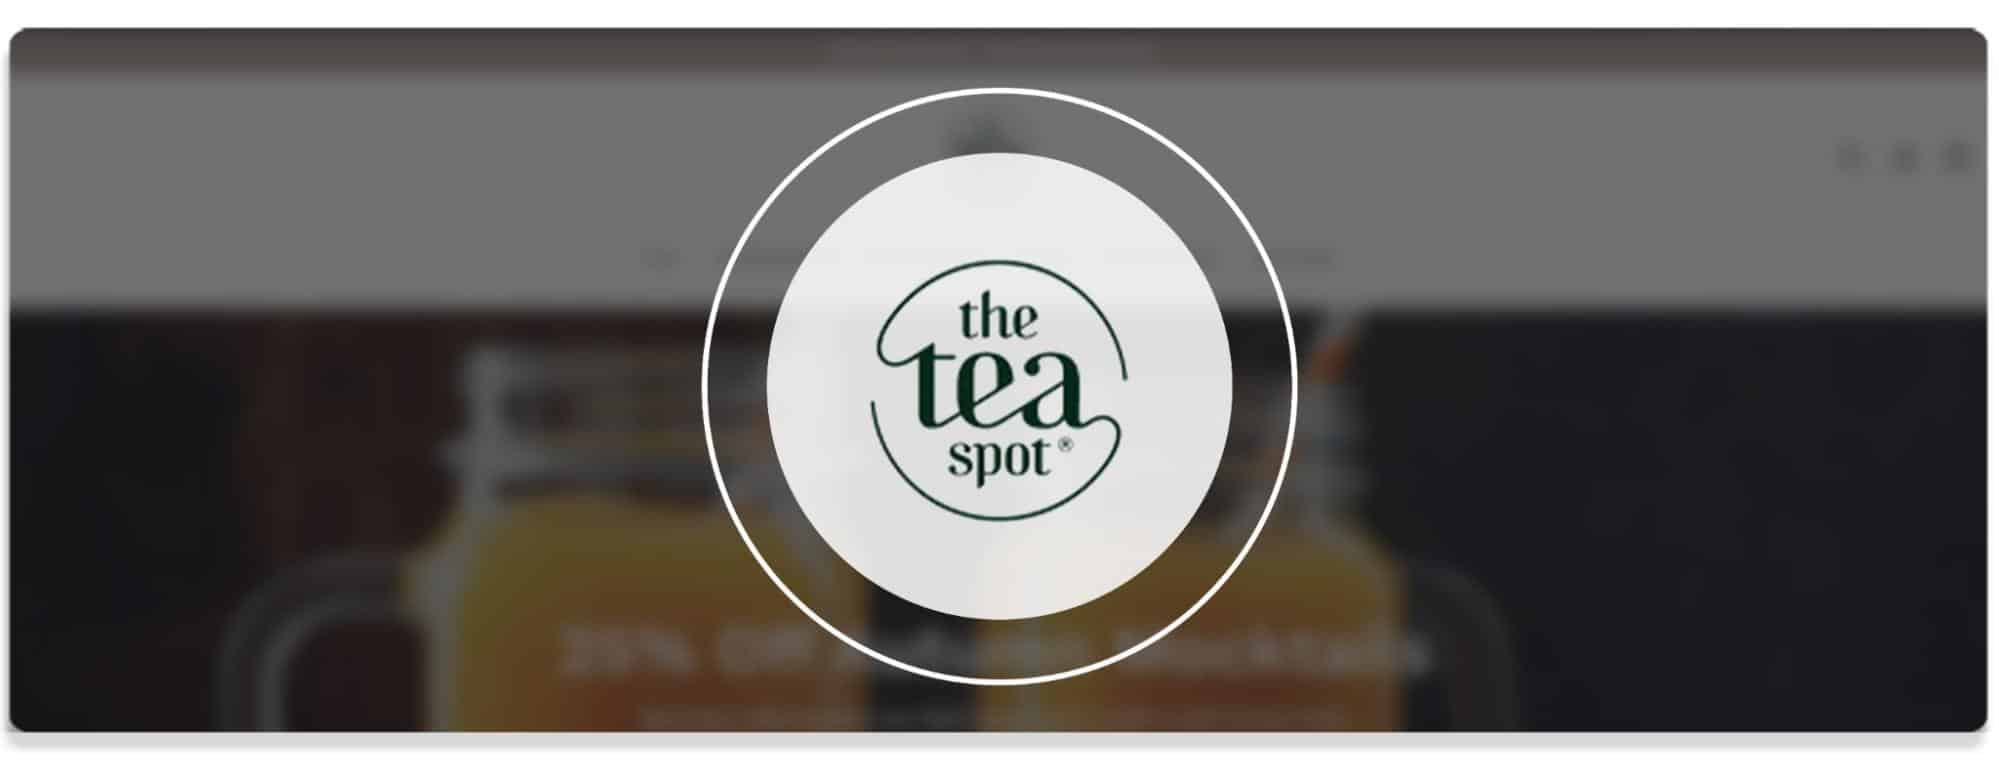 The Tea Spots